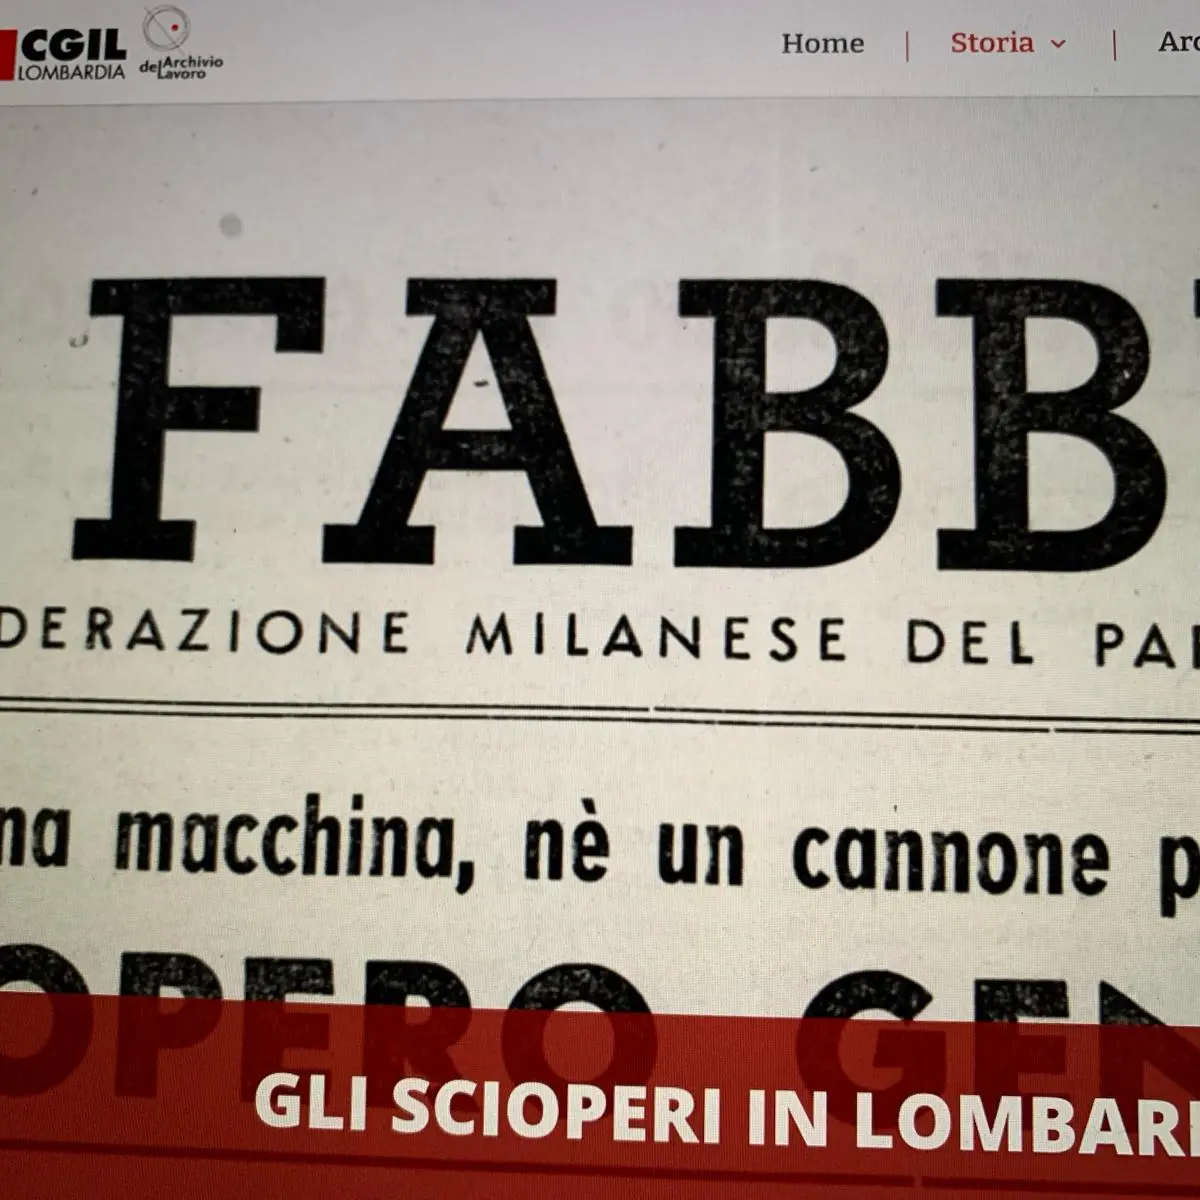 Online mostra “1944: l’anno della svolta” di Cgil Lombardia